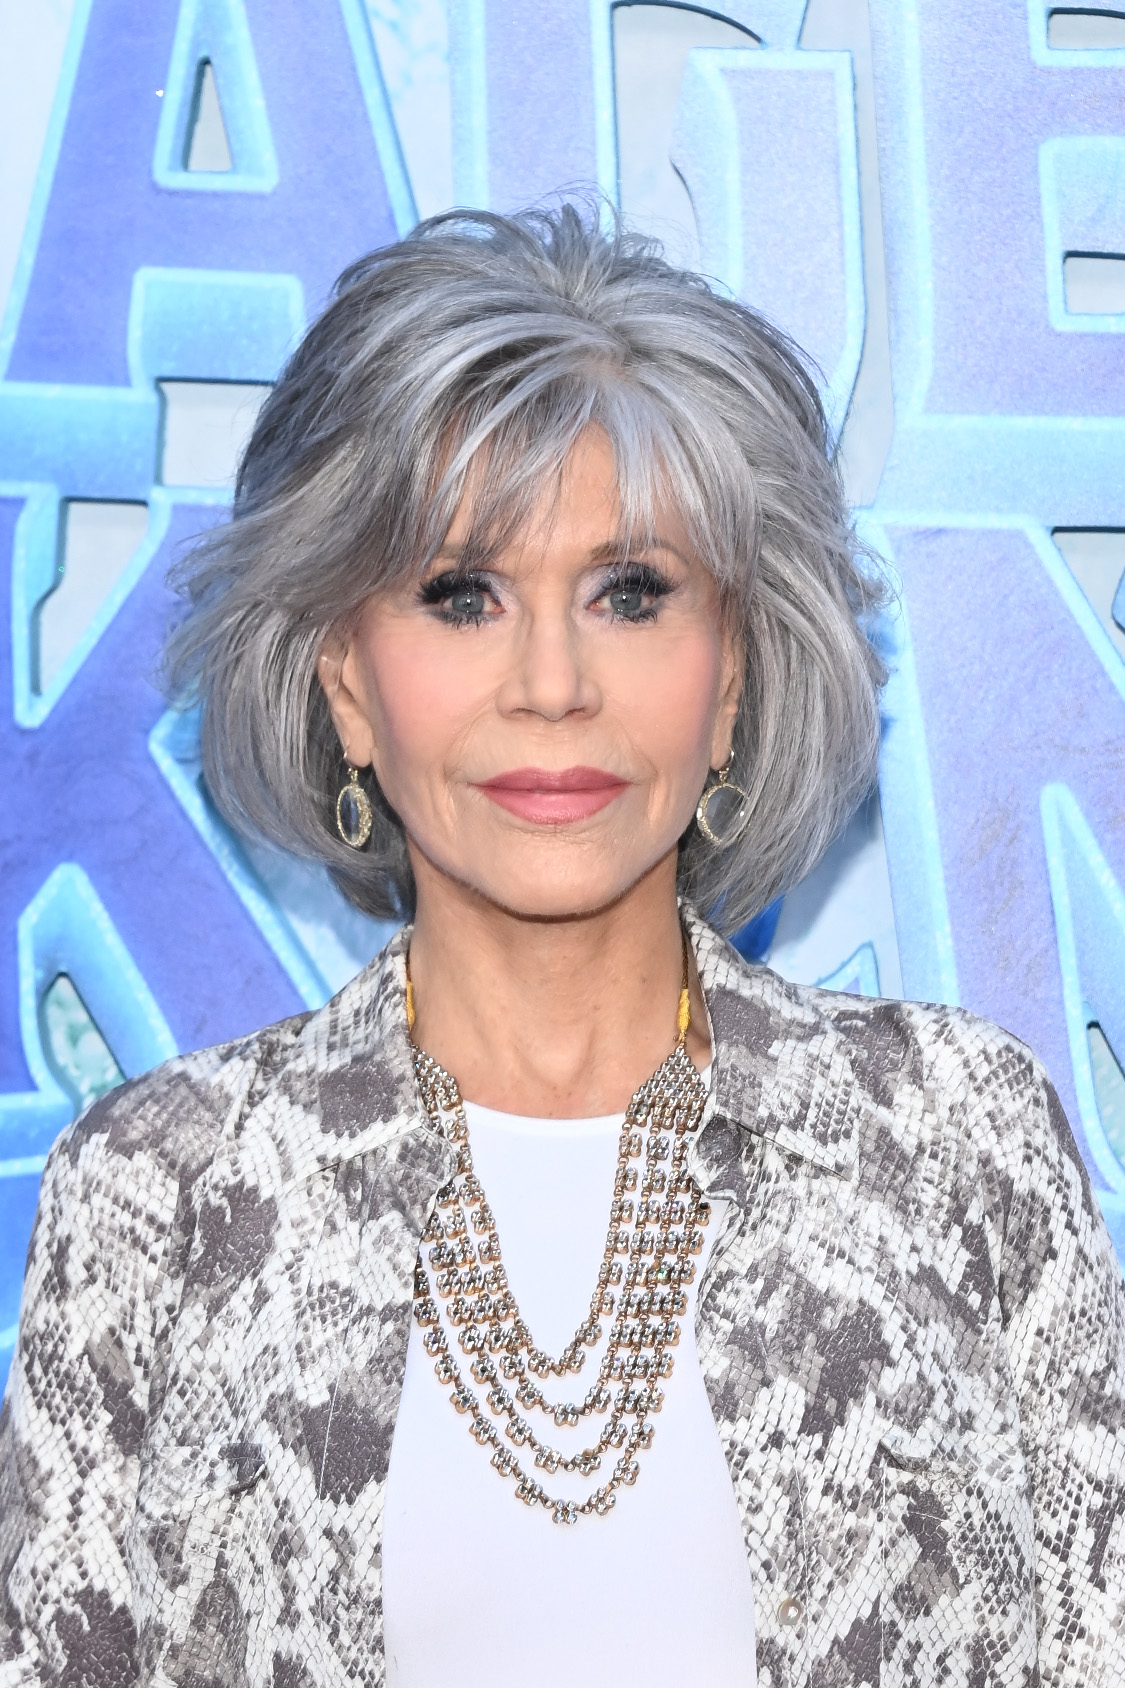 Jane Fonda bei der Premiere von "Ruby Gillman: Teenage Kraken" im Jahr 2023 | Quelle: Getty Images